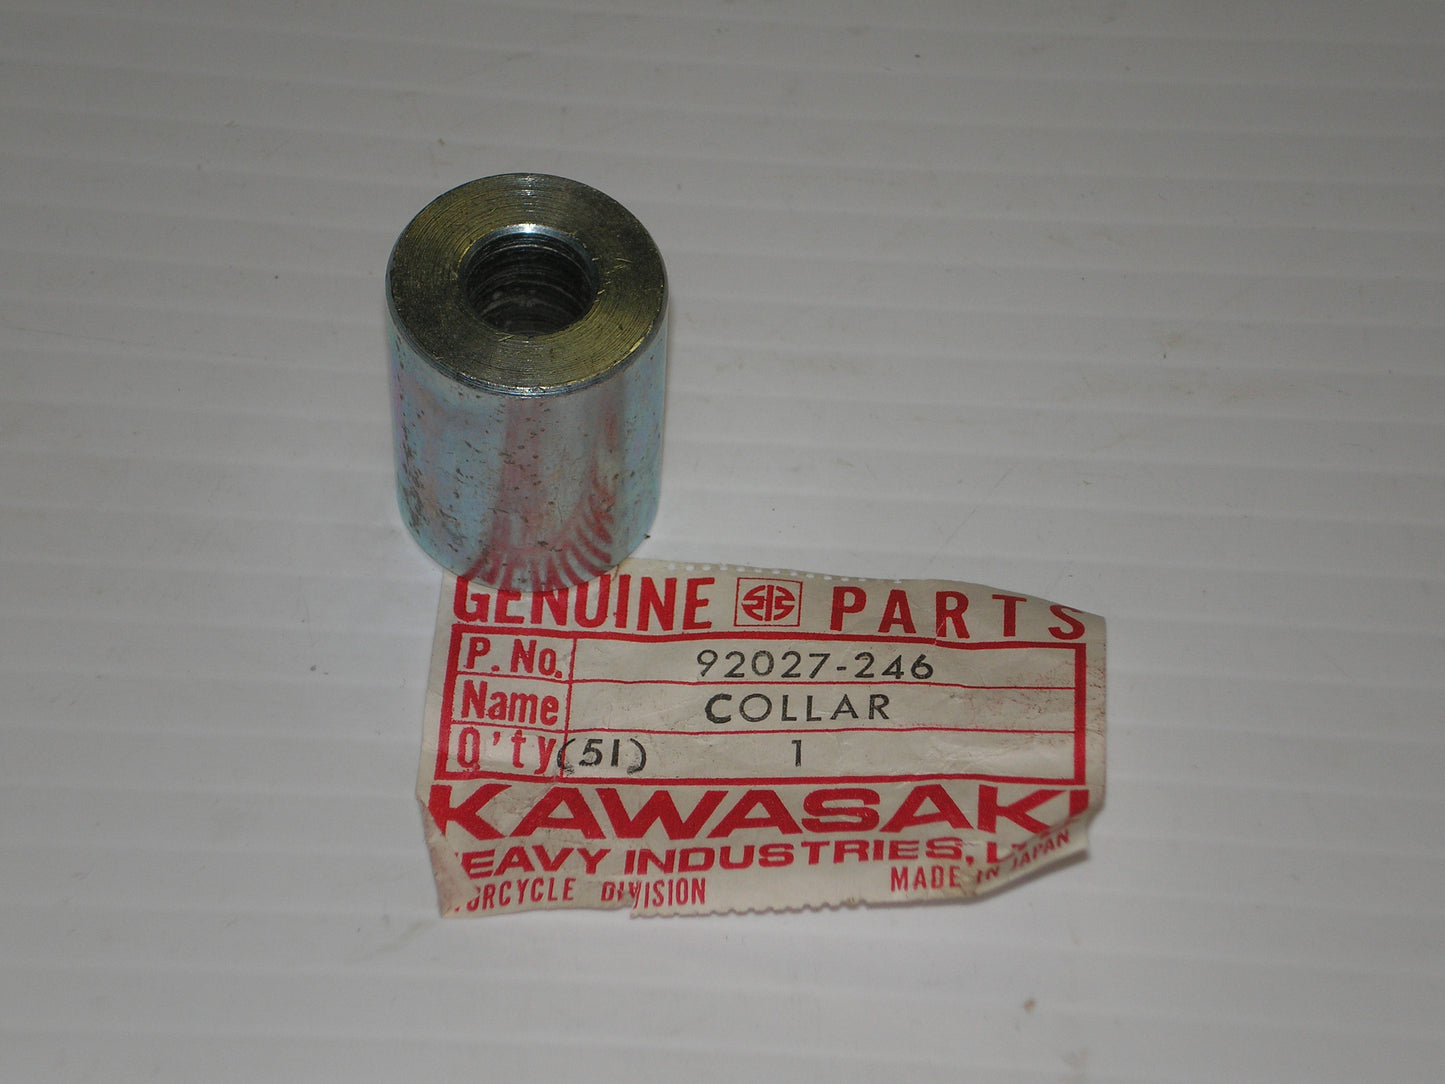 KAWASAKI KZ750 1976-1982 Frame Fitting Collar 92027-246